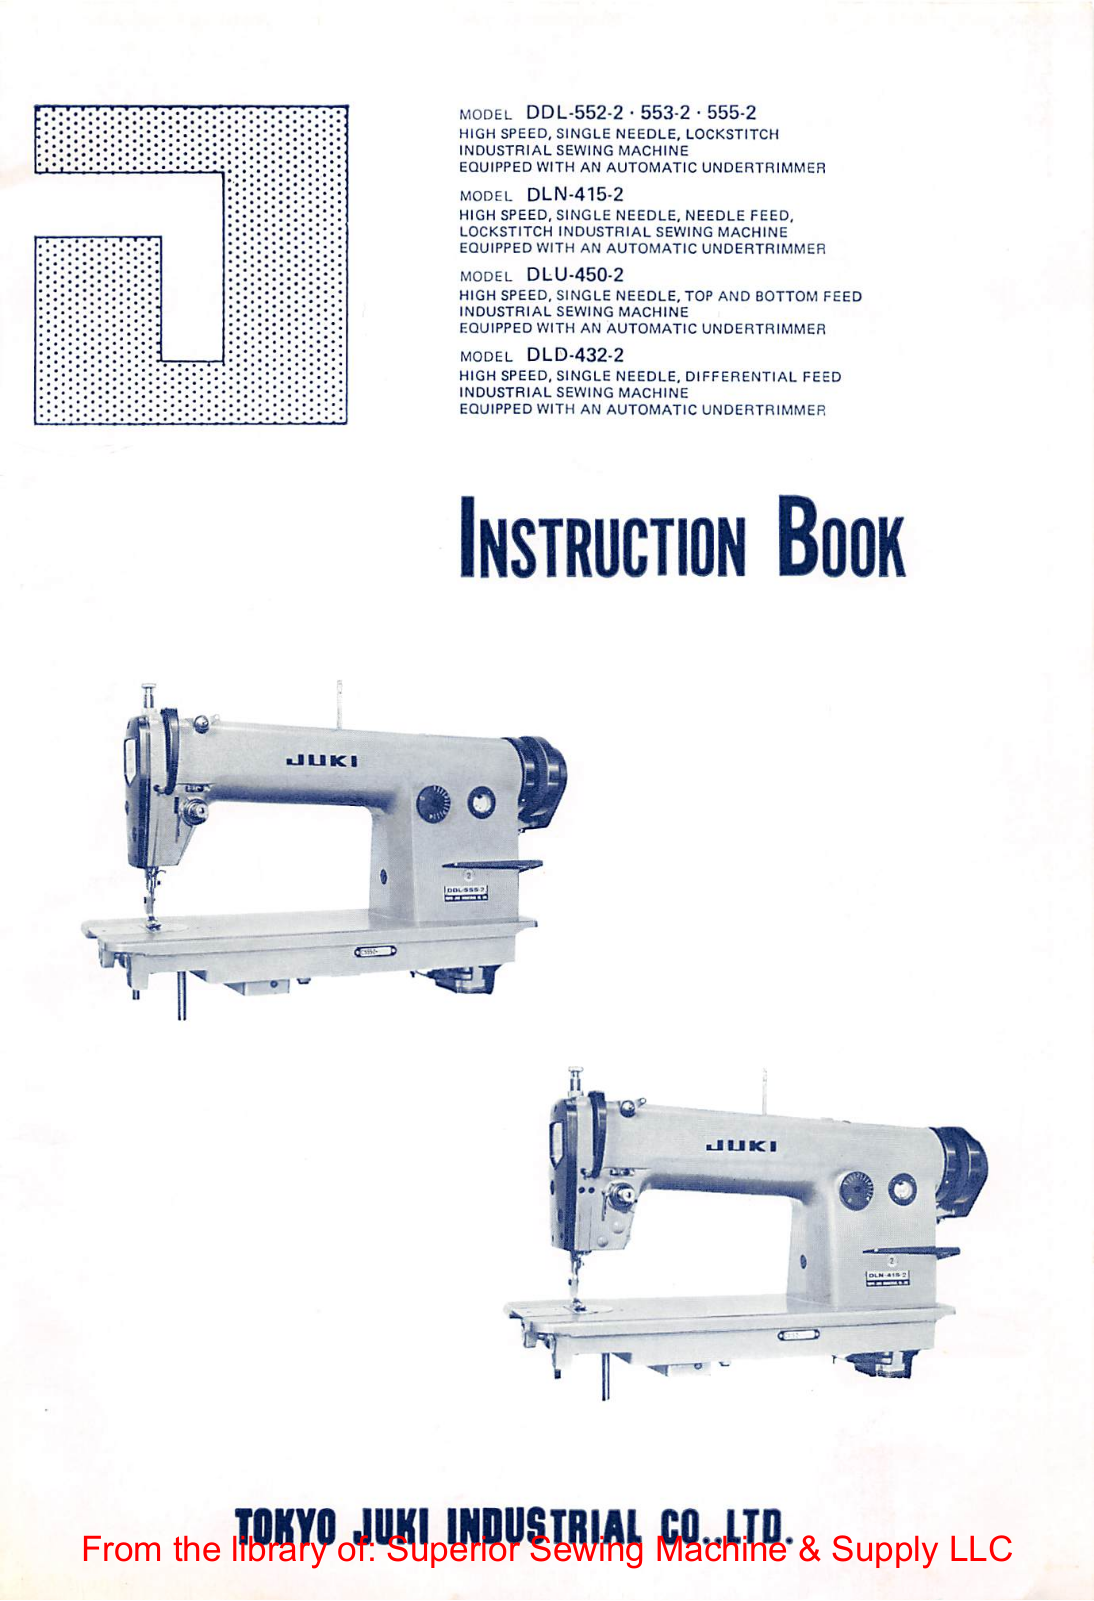 Juki DDL-552-2, DDL-553-2, DDL-555-2 Instruction Manual